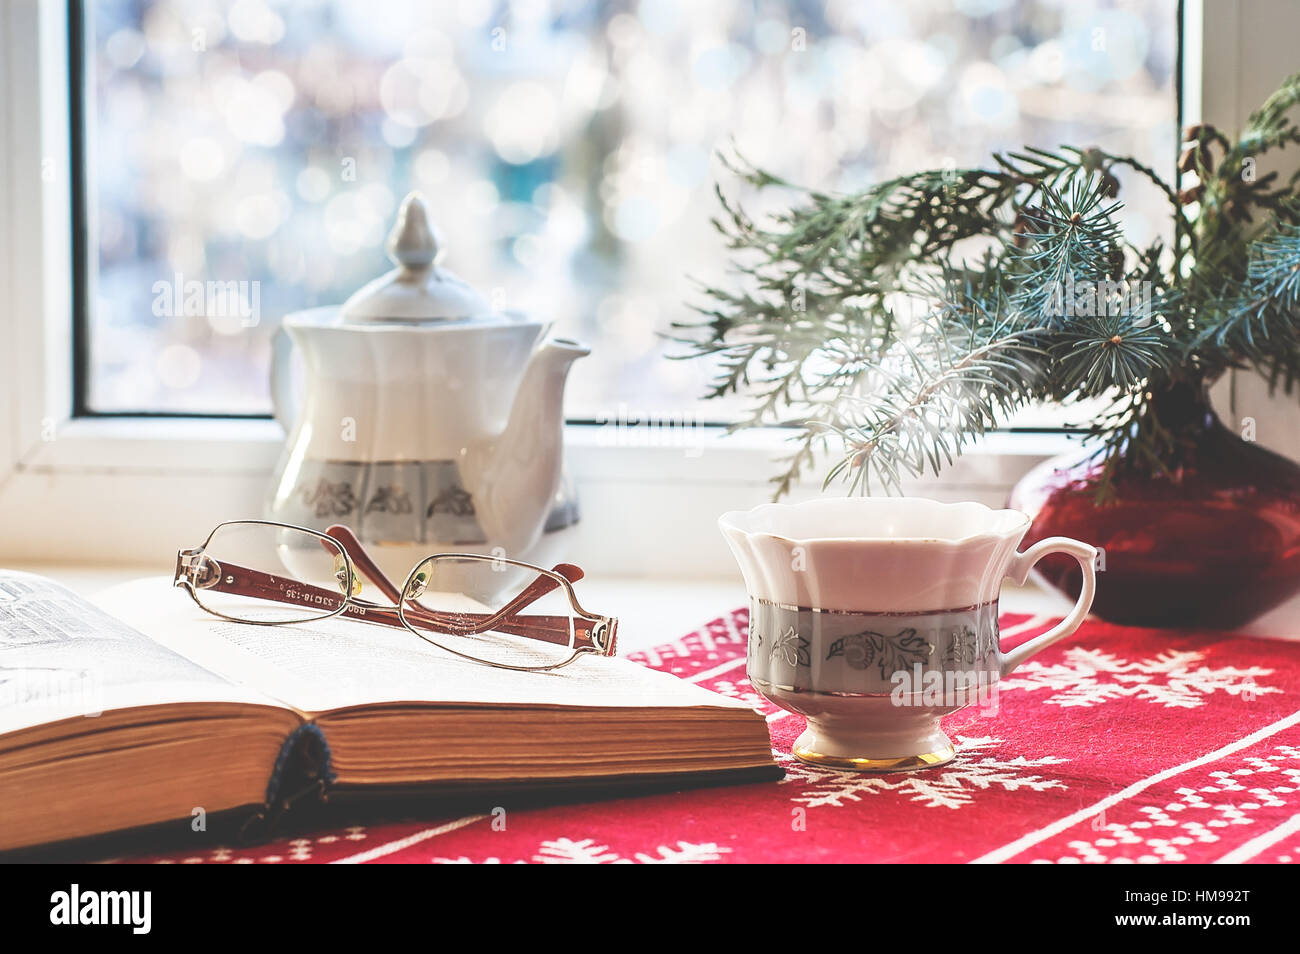 La vie encore d'hiver : open book, verres, verre, tasse de thé et l'arbre de Noël dans un vase. Focus sélectif. Décoration d'intérieur, vous pourrez vous détendre concept Banque D'Images